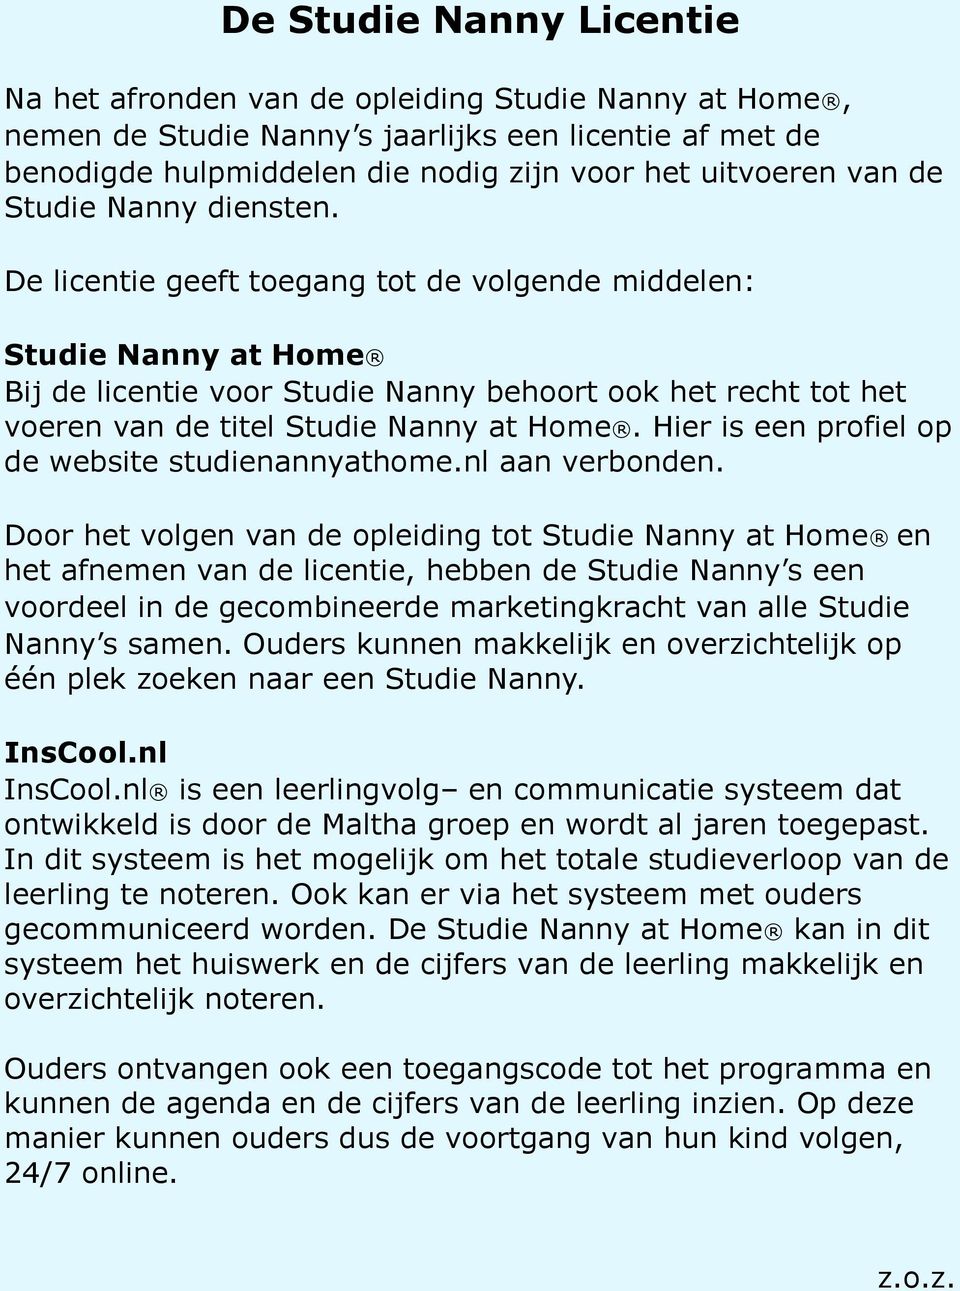 De licentie geeft toegang tot de volgende middelen: Studie Nanny at Home Bij de licentie voor Studie Nanny behoort ook het recht tot het voeren van de titel Studie Nanny at Home.